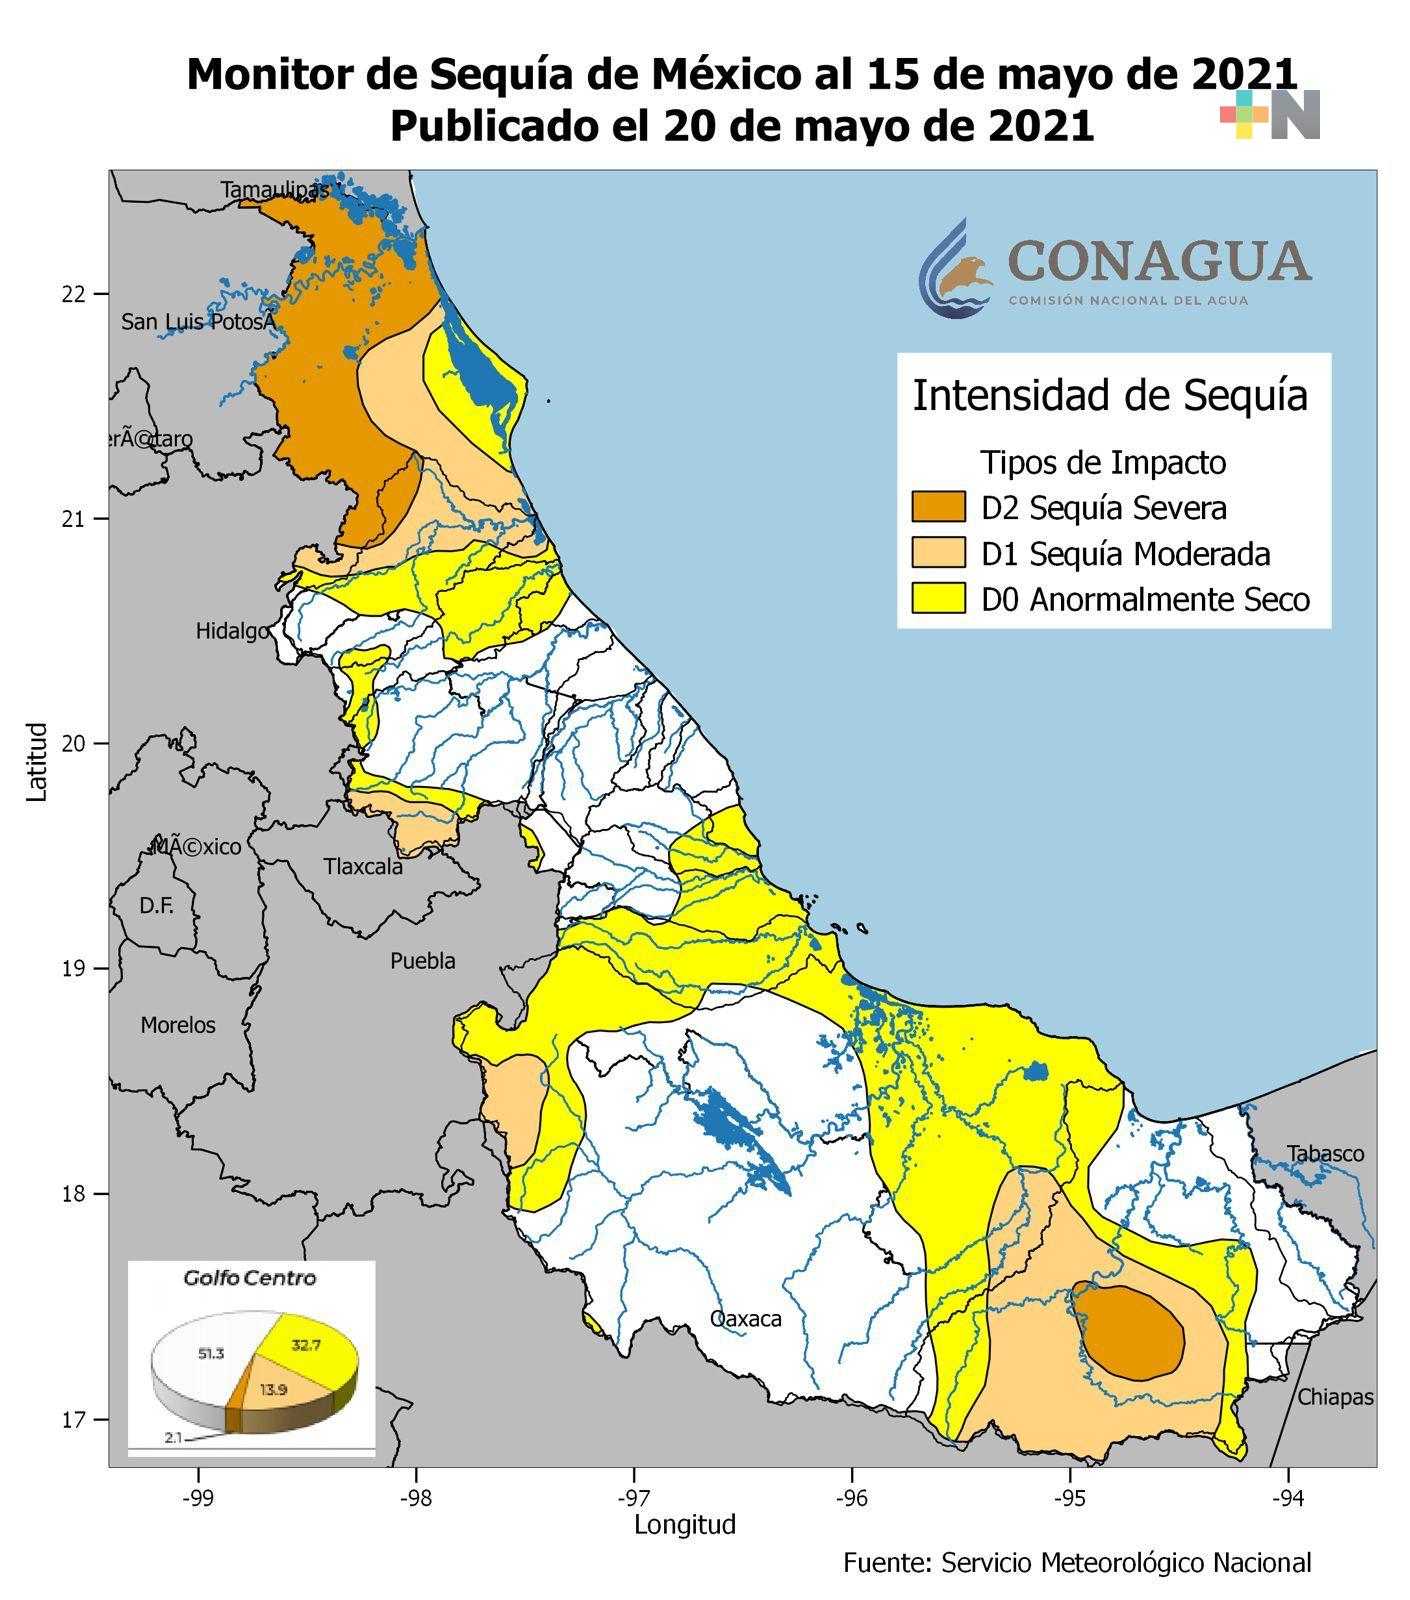 Aumenta el número de municipios con sequía severa en Veracruz